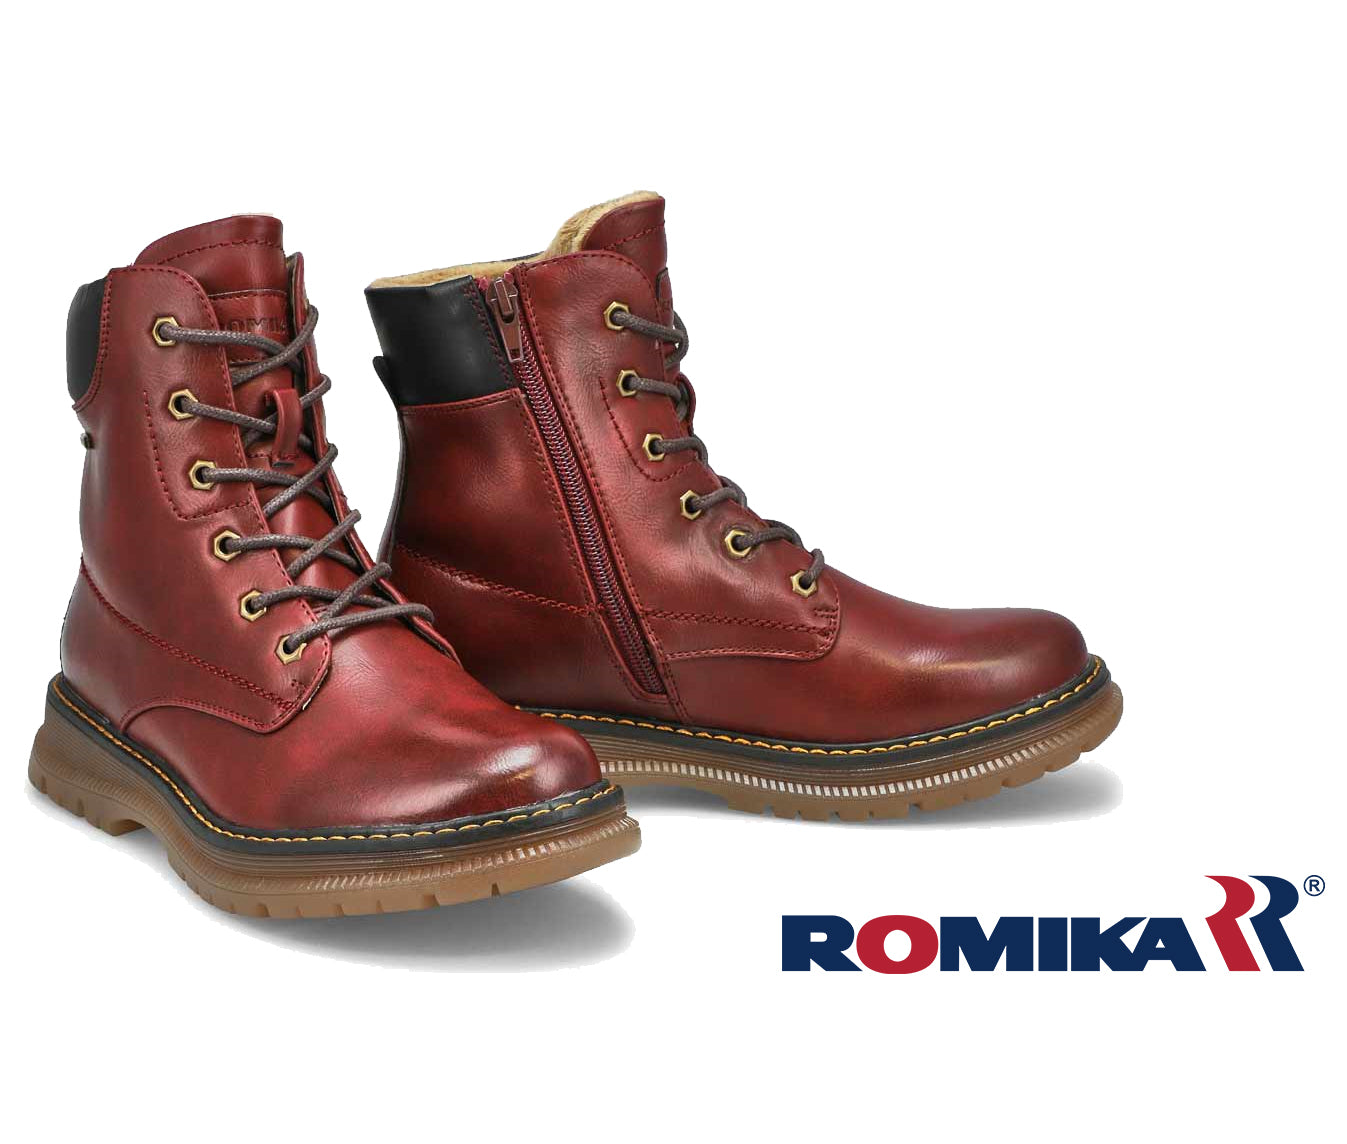 Romika Fall Boot - Peyton 01